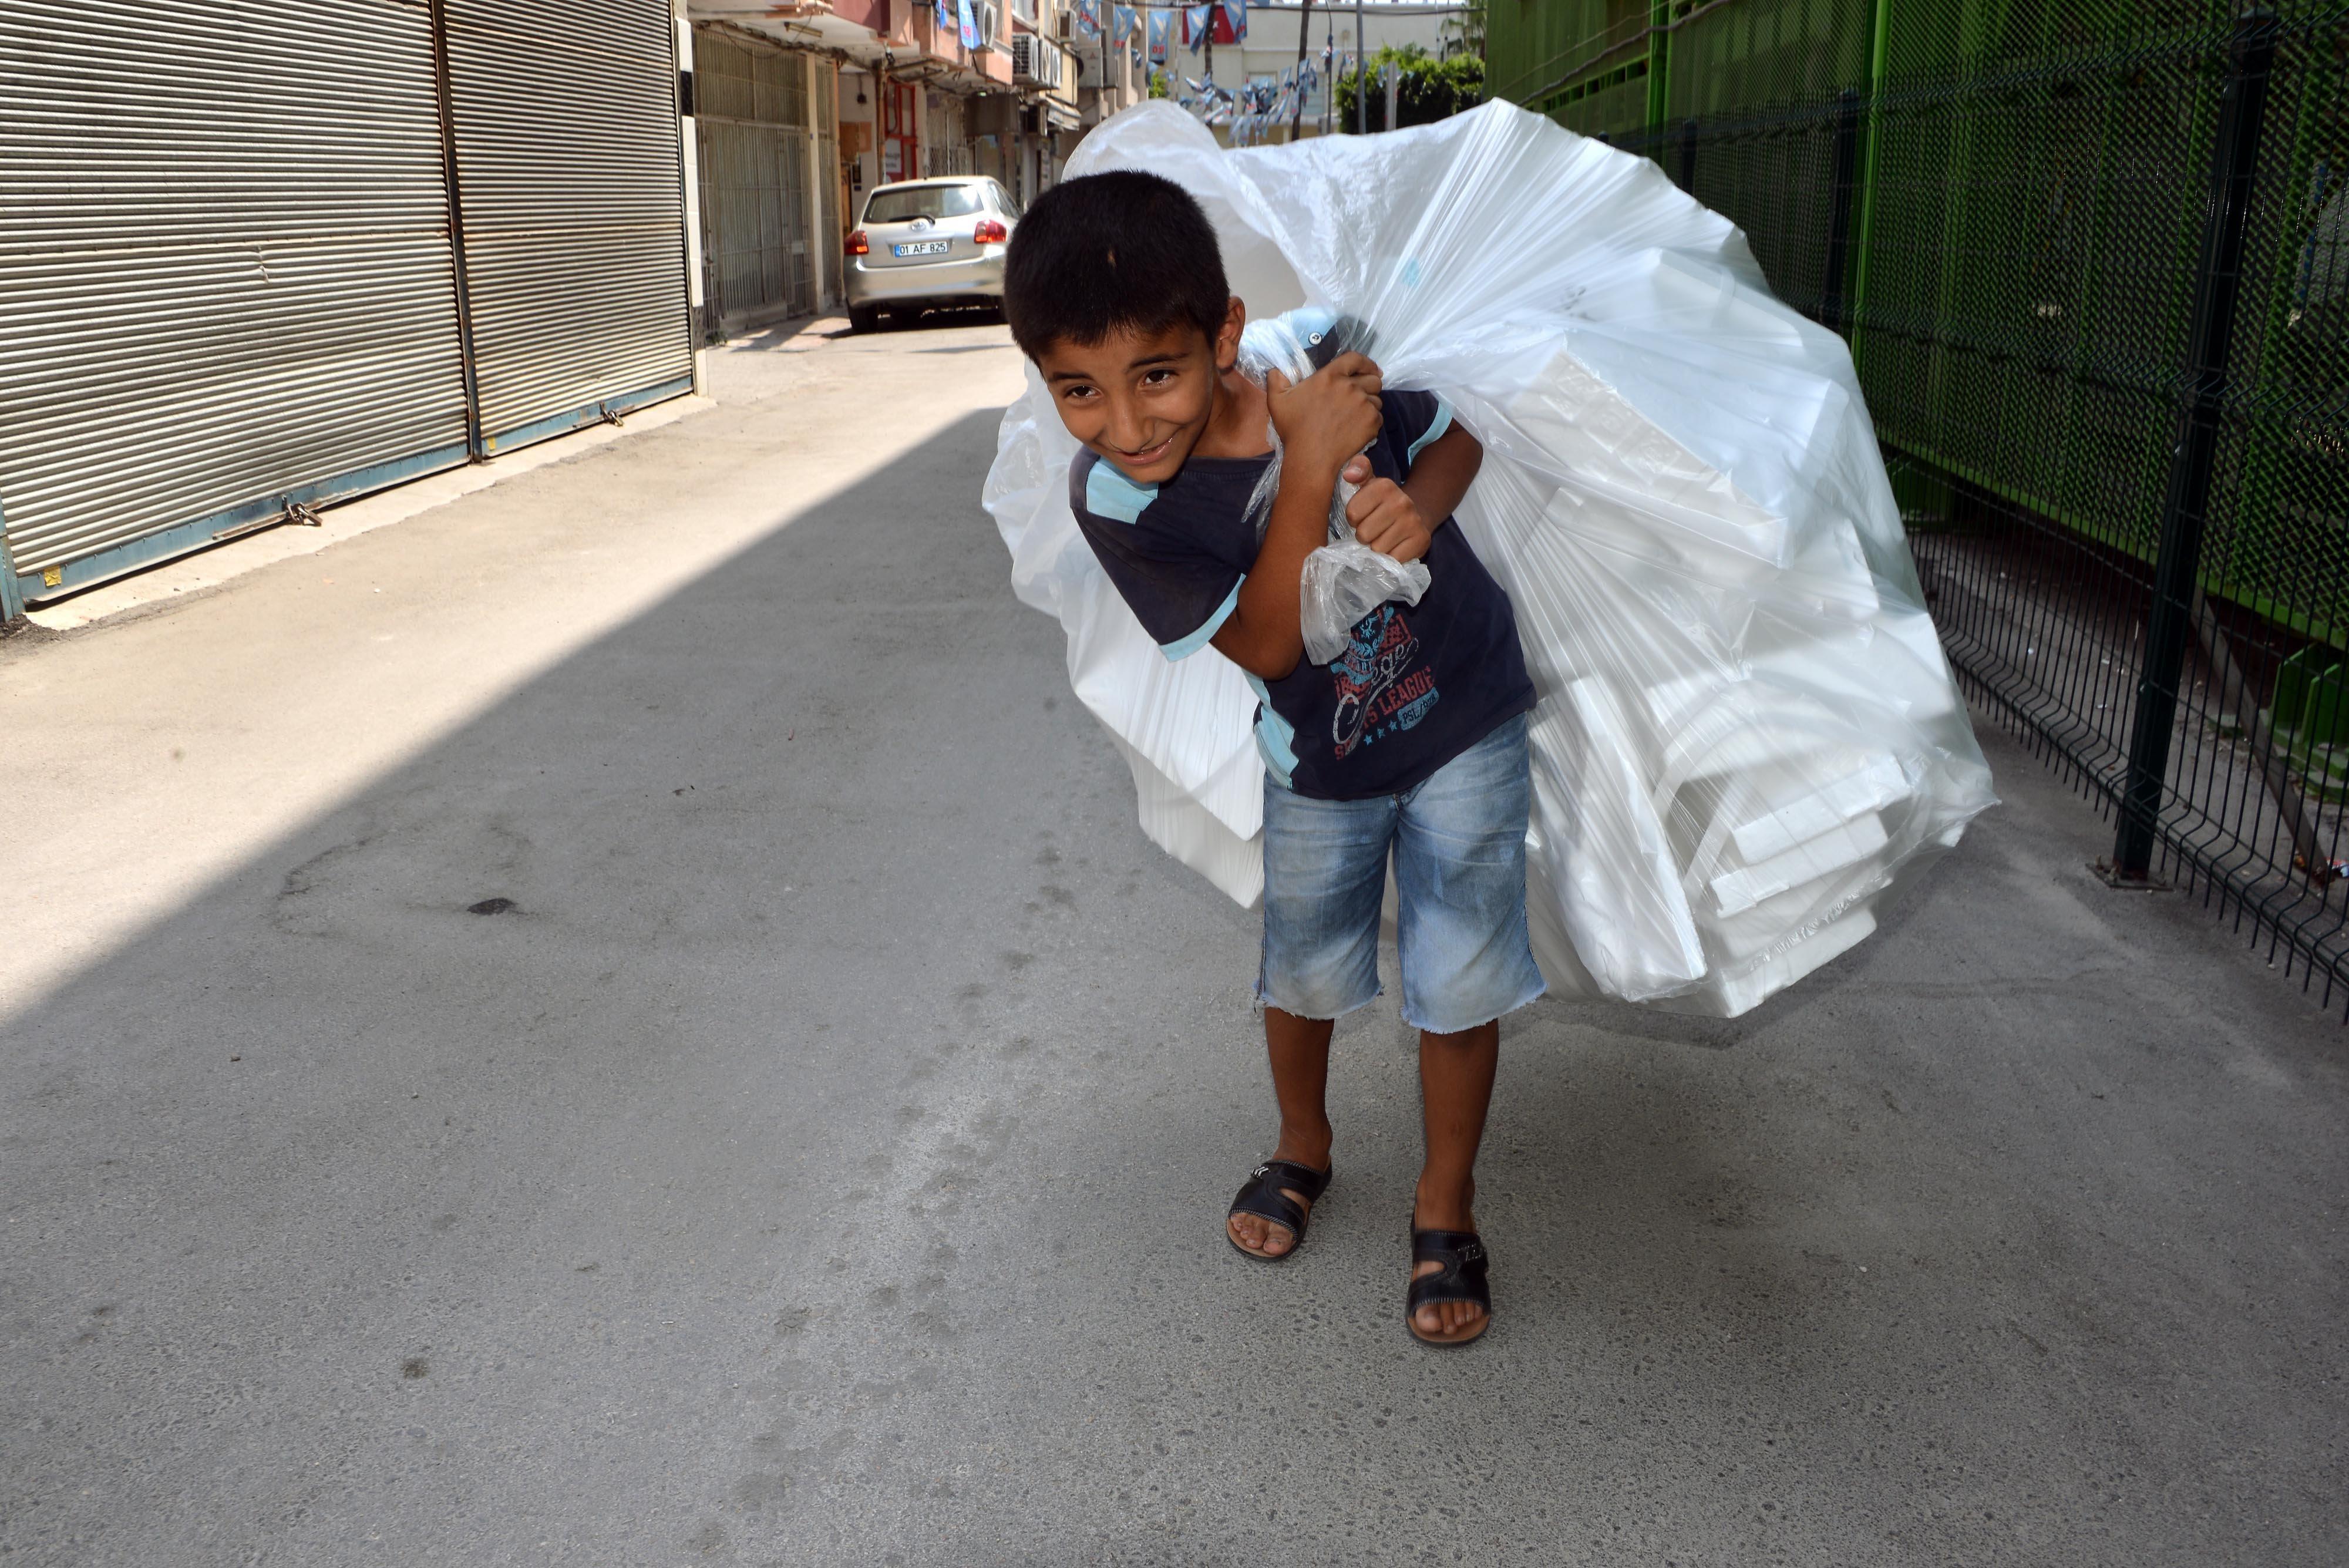 Adanada 11 yaşındaki Cuma, kağıt toplarken görüntülendi